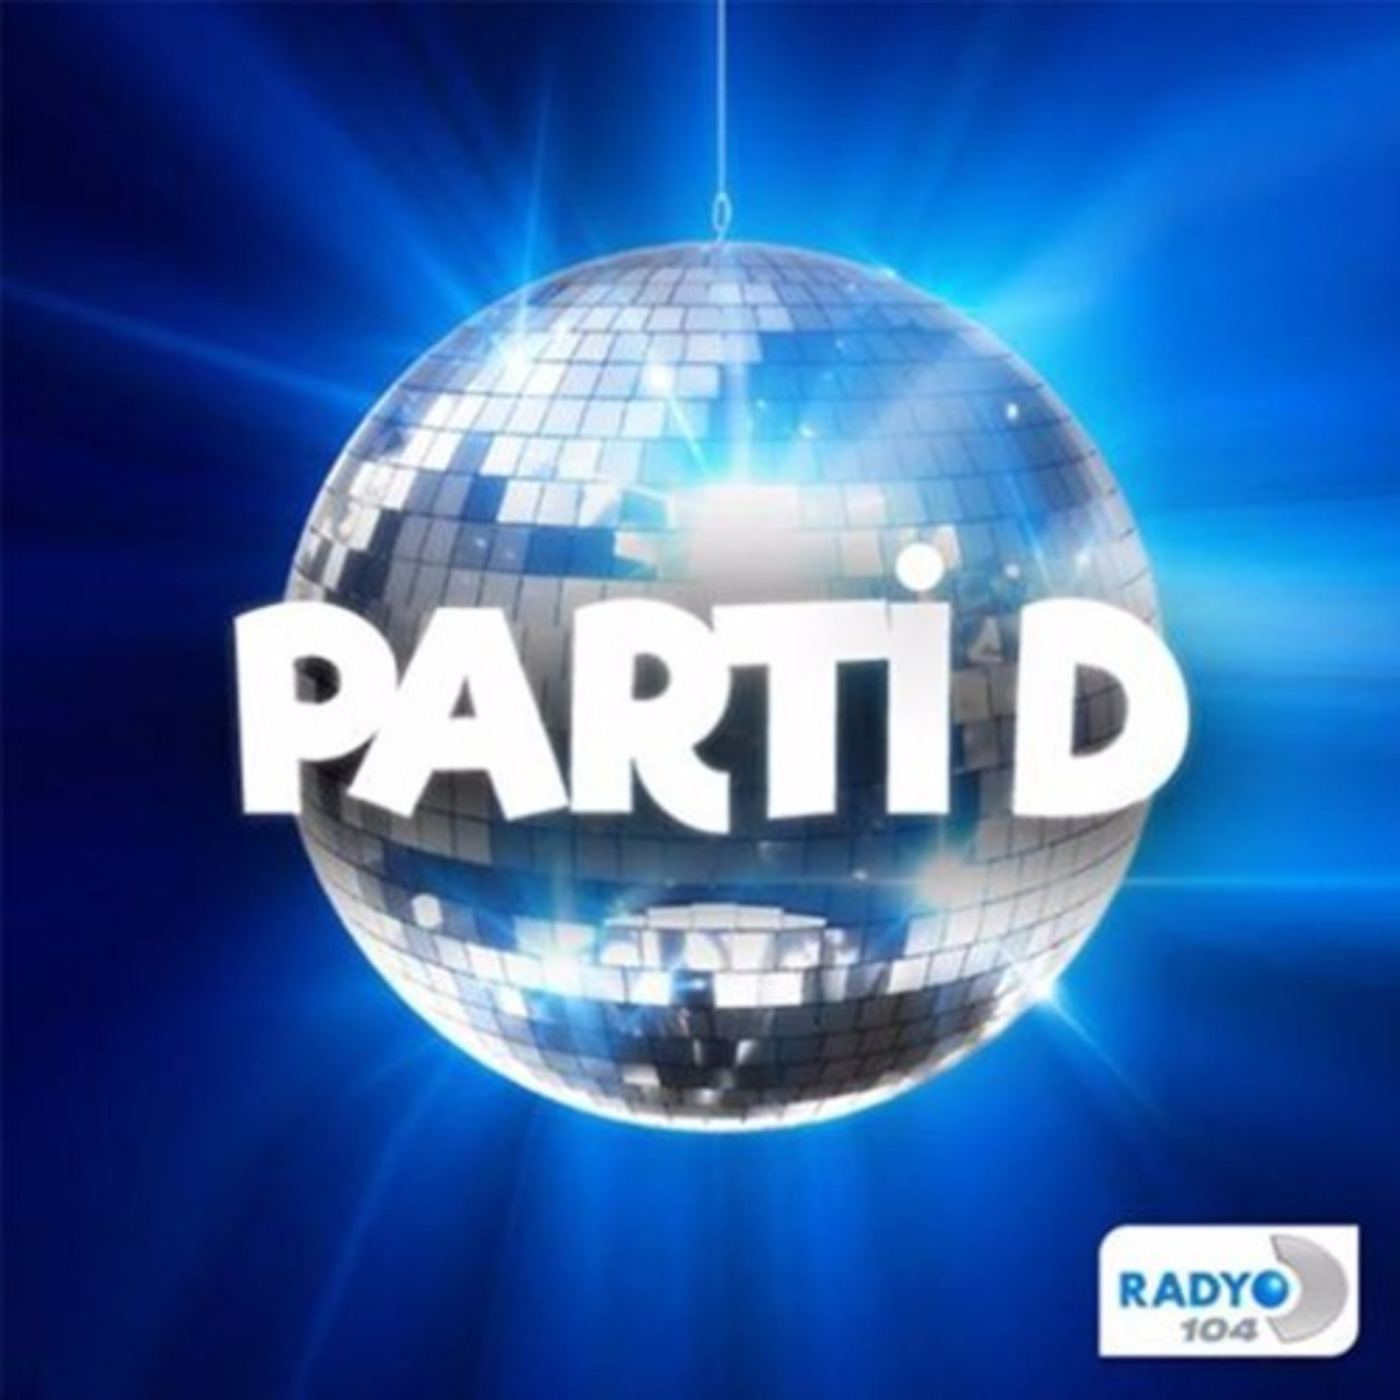 Muratt Mat - Radyo D 104 - Parti D (17.01.2020)